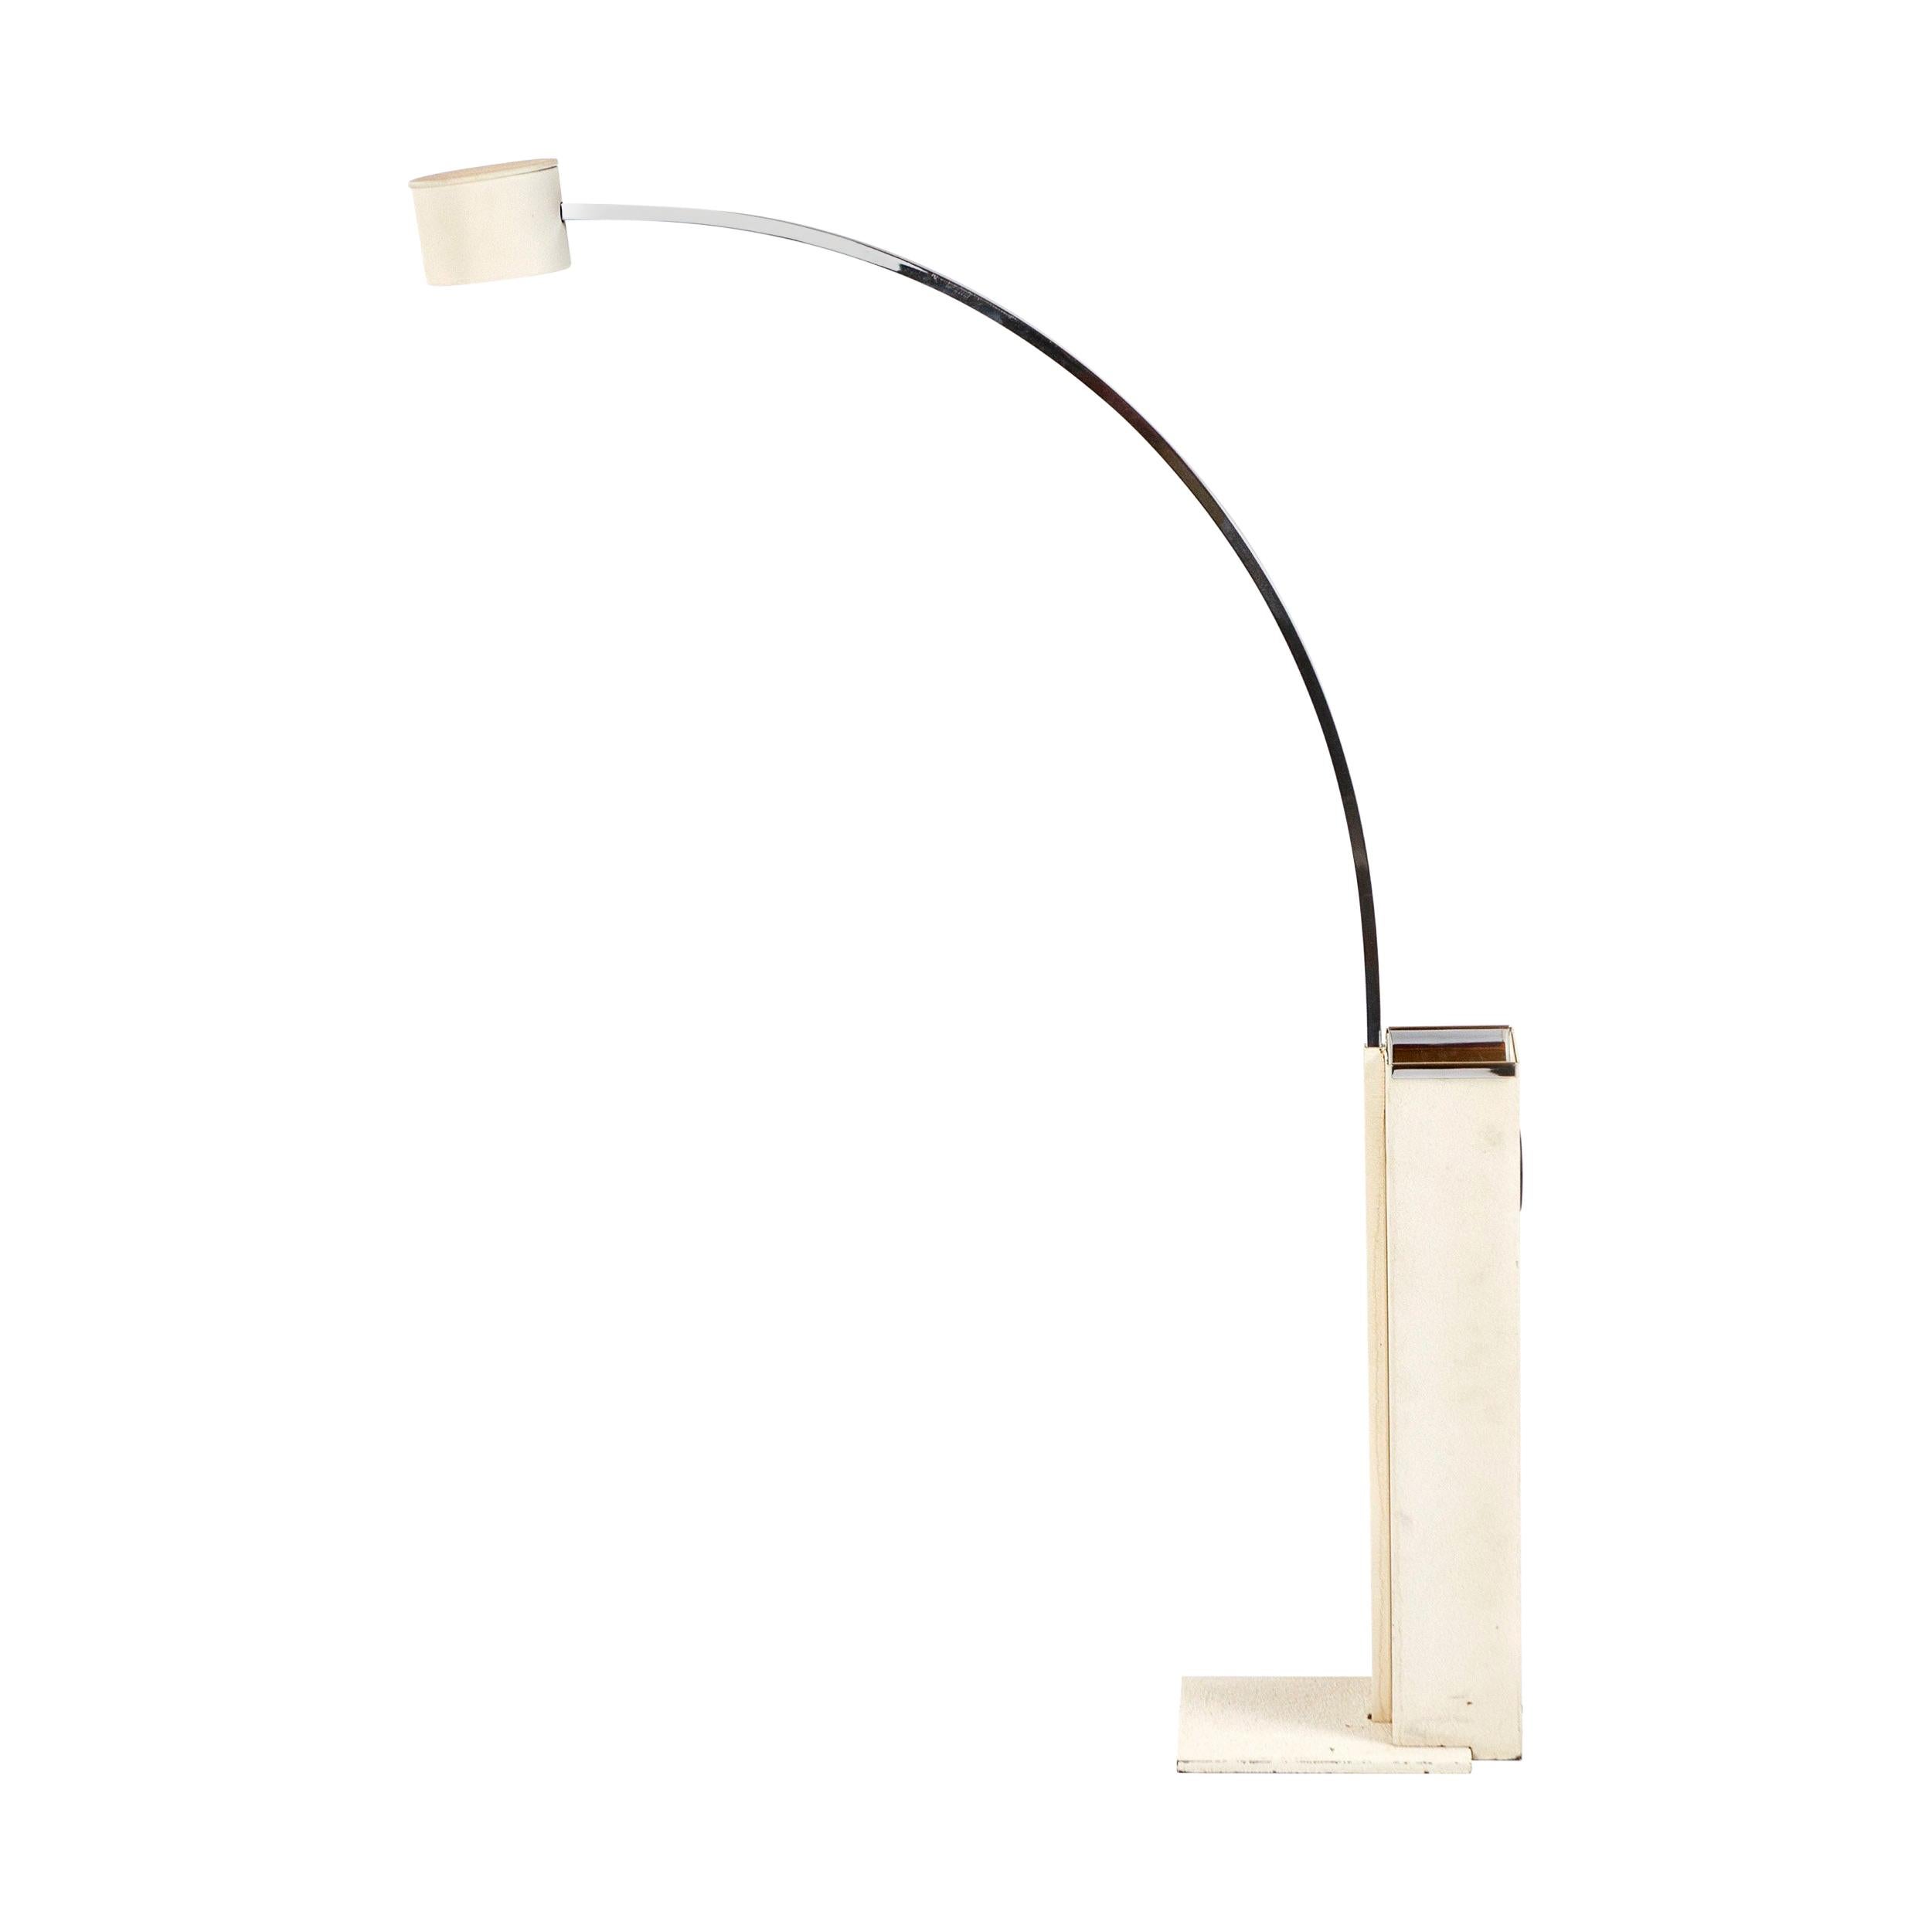 1970s Italian Floor Lamp by Gino Sarfatti for Arteluce